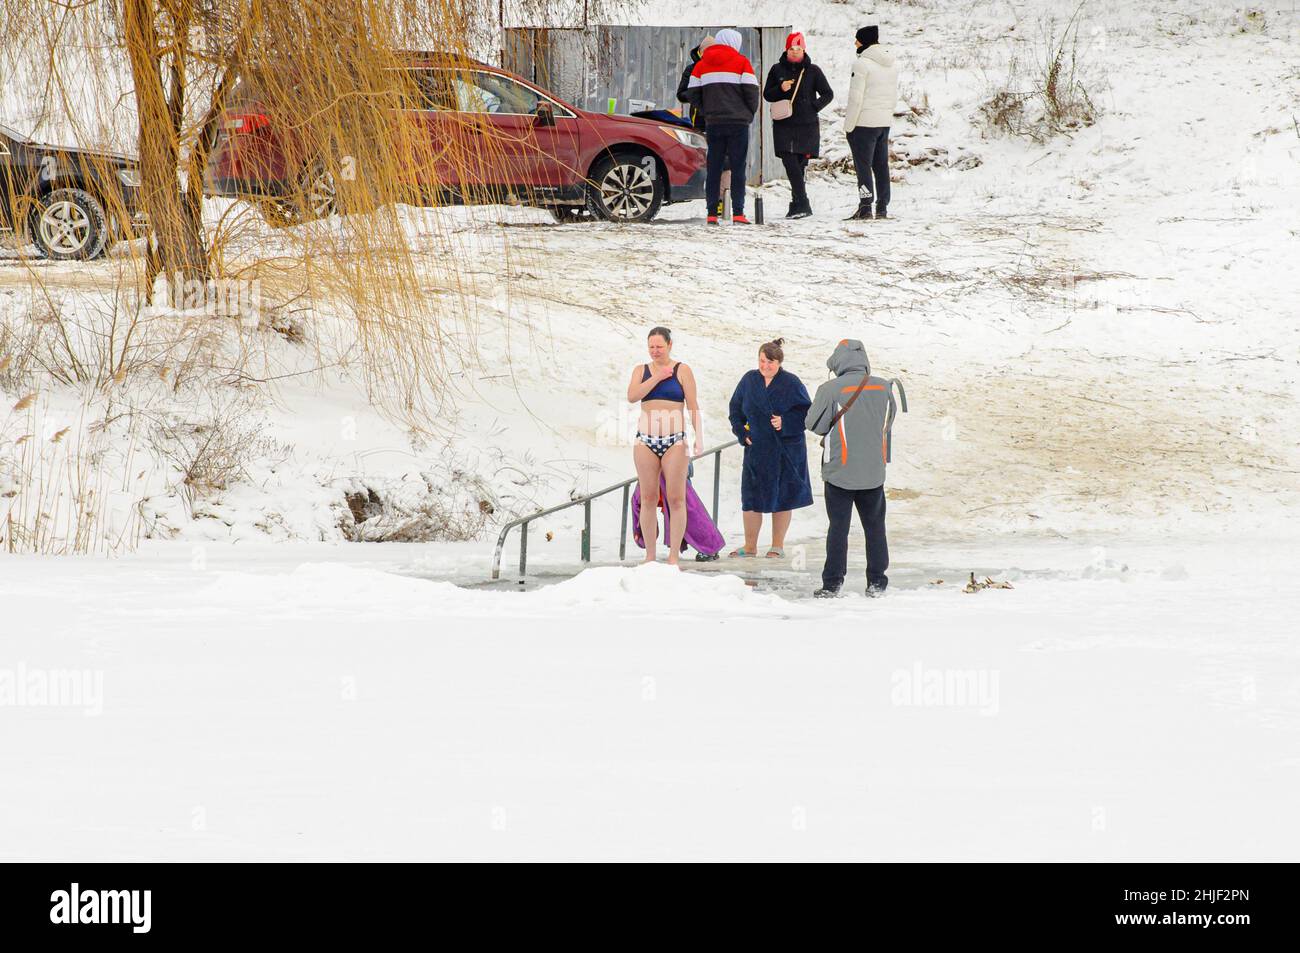 Poltawa, Ukraine. Januar 19. 2022. Im Winter, dem Fest der Epiphanion, schwimmen die Menschen im Eisloch. Orthodoxe Wintertraditionen. Stockfoto